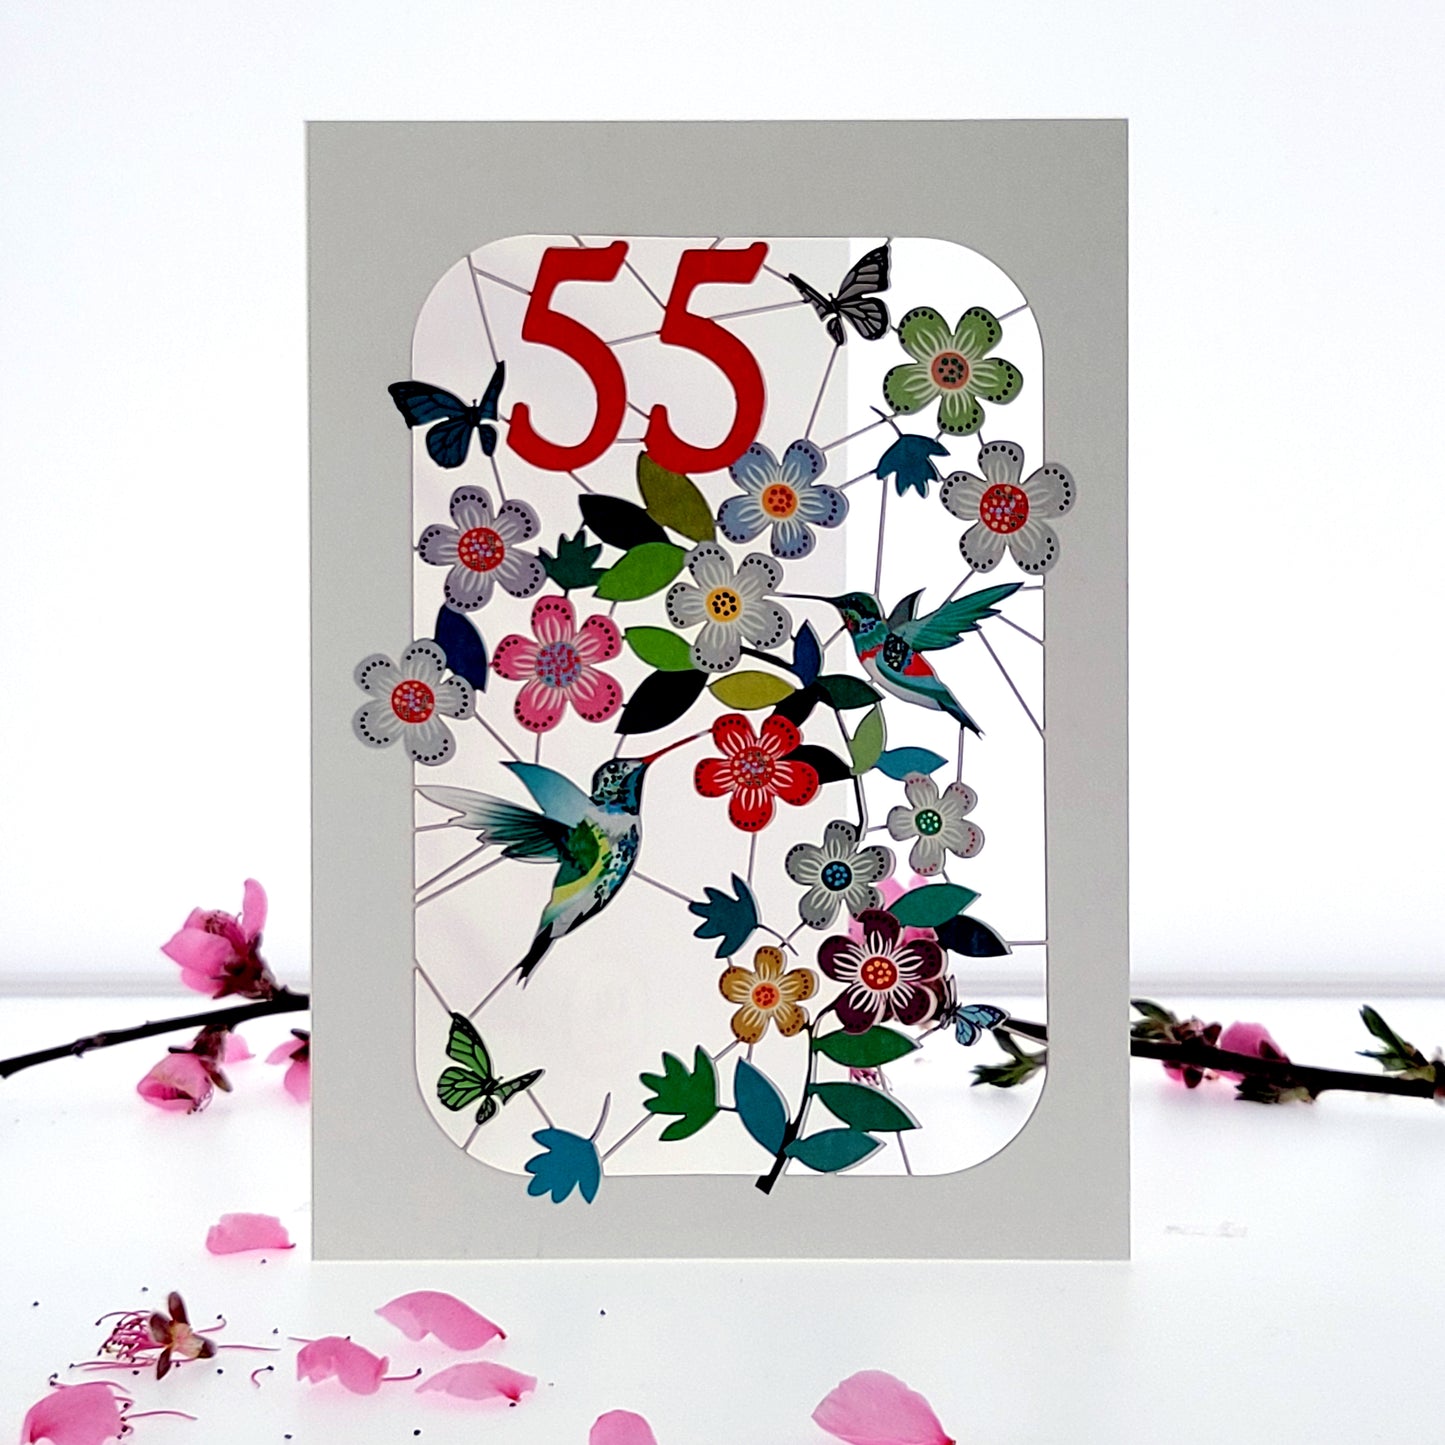 Age 55 Birthday Card, 55th Birthday Card, Humming Bird Card - GF055